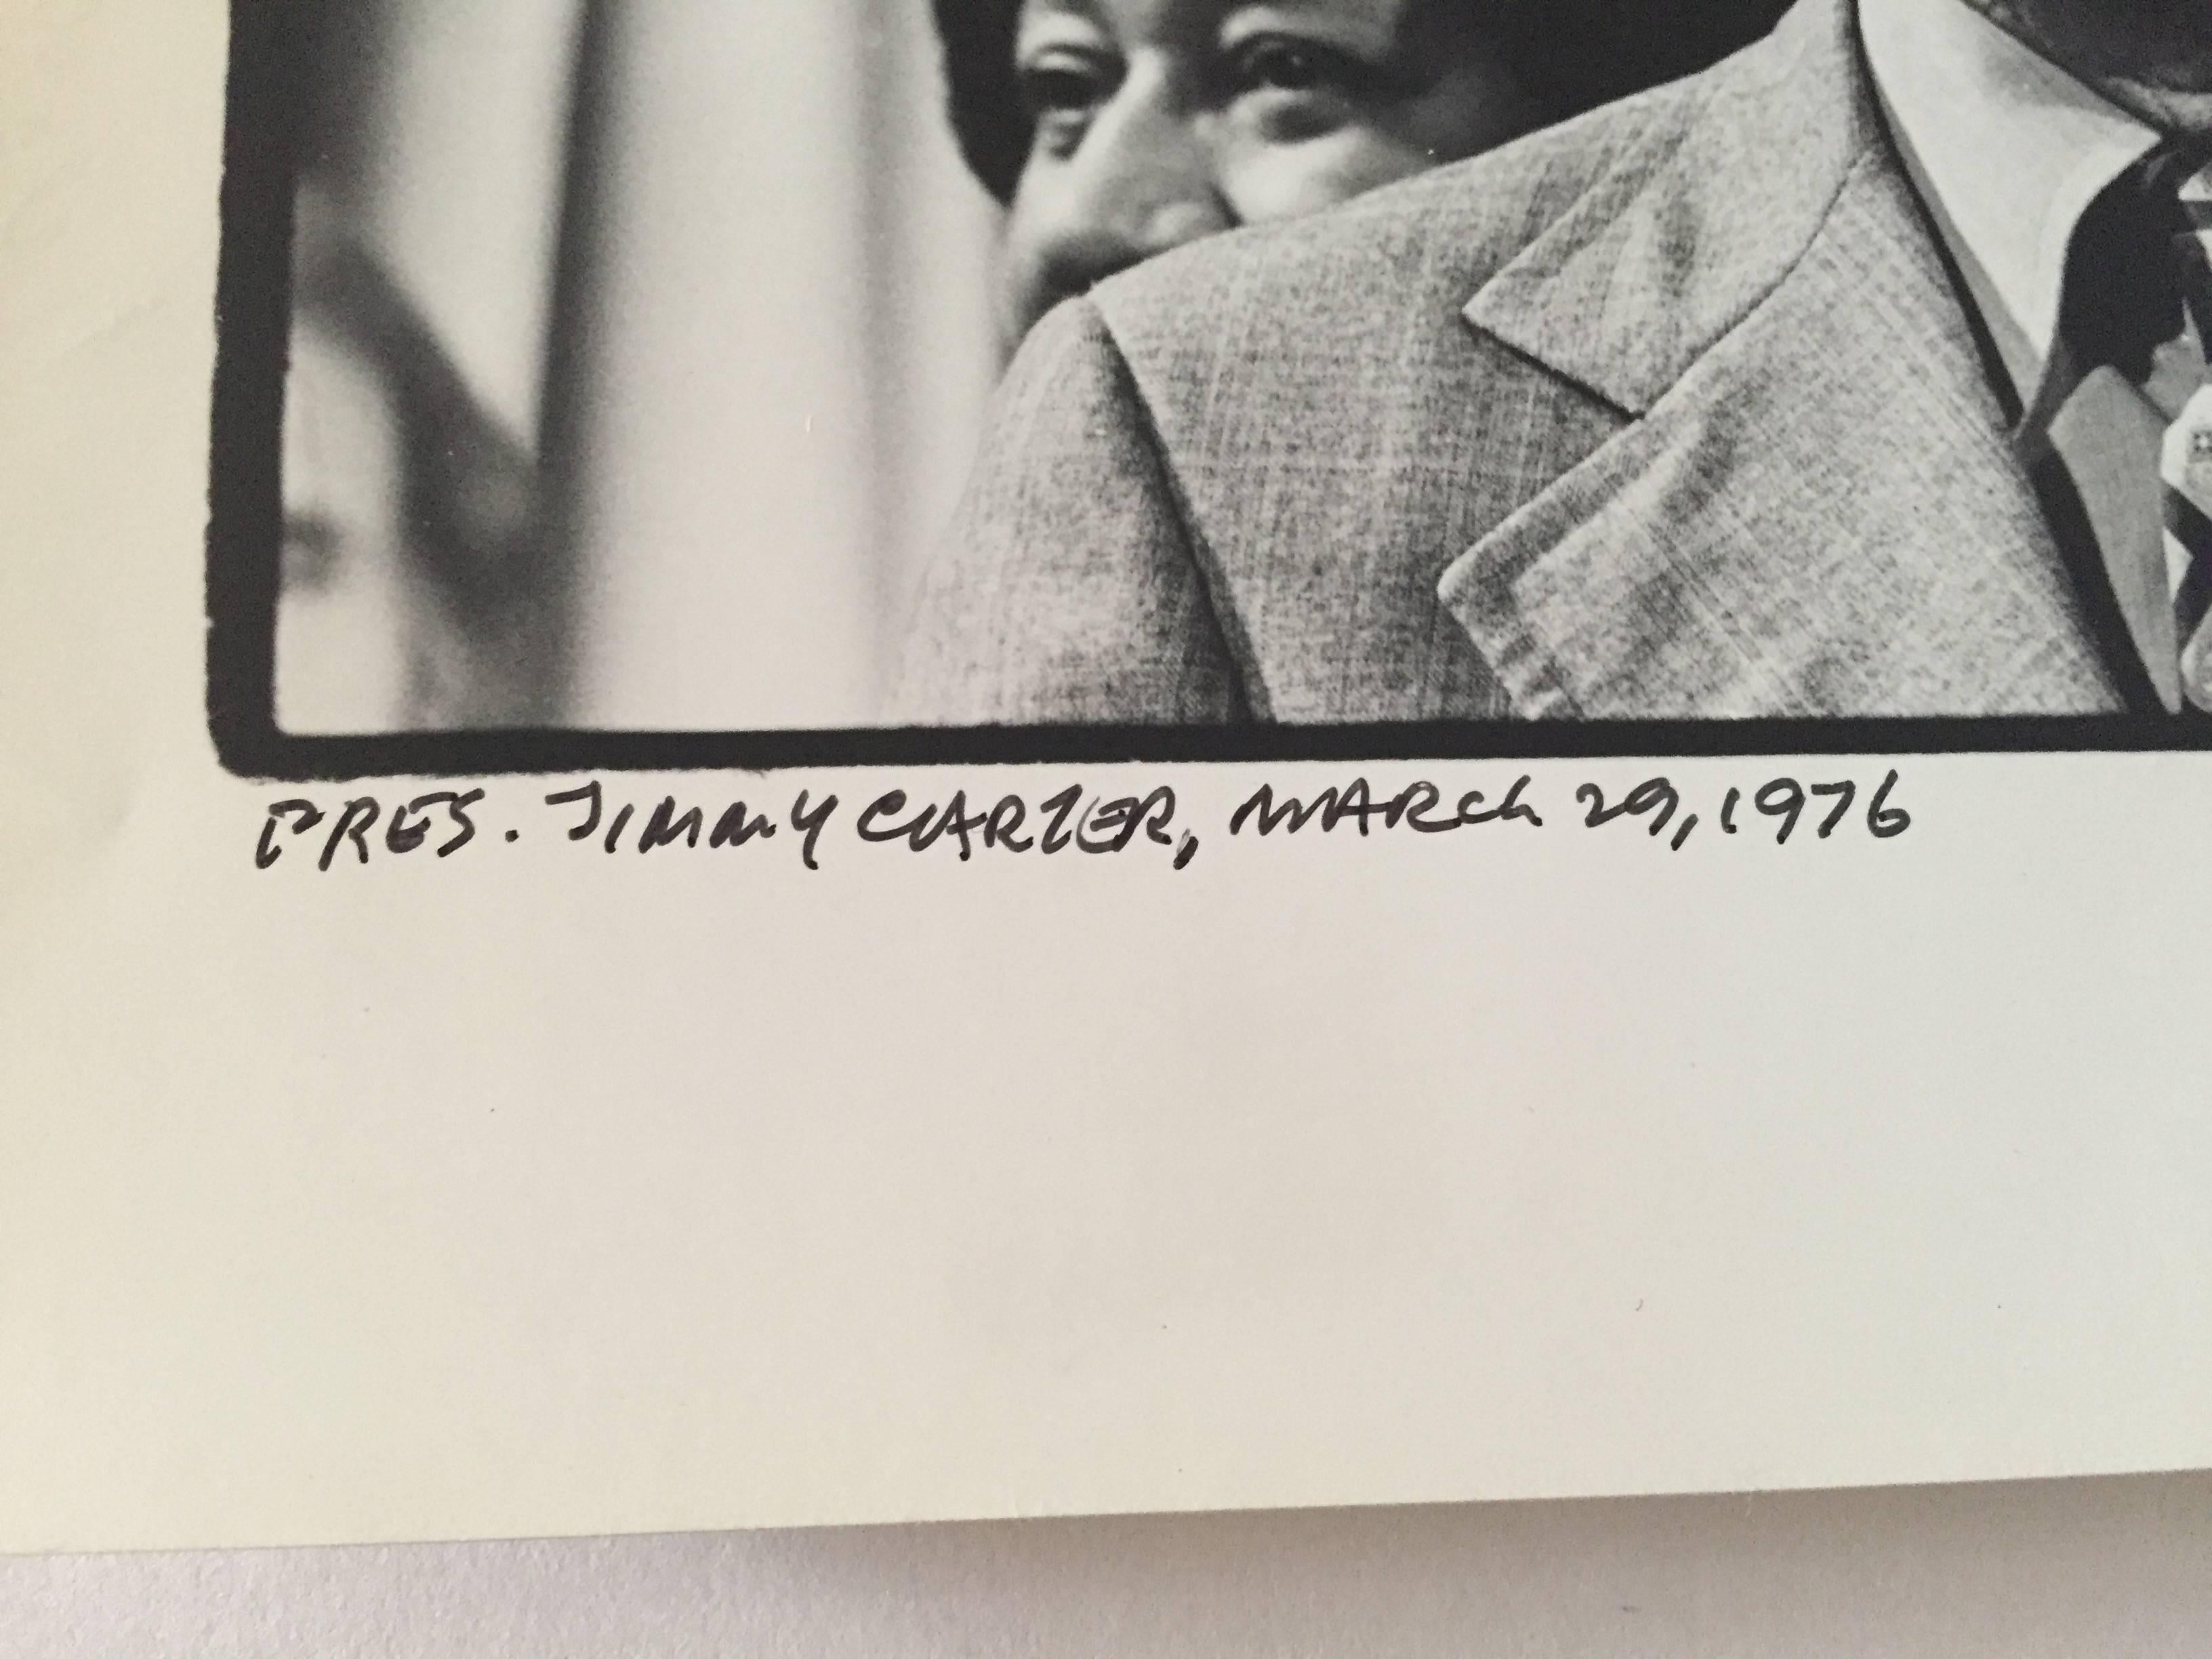 Präs. Jimmy Carter, 29. März 1976 – Photograph von Fred McDarrah